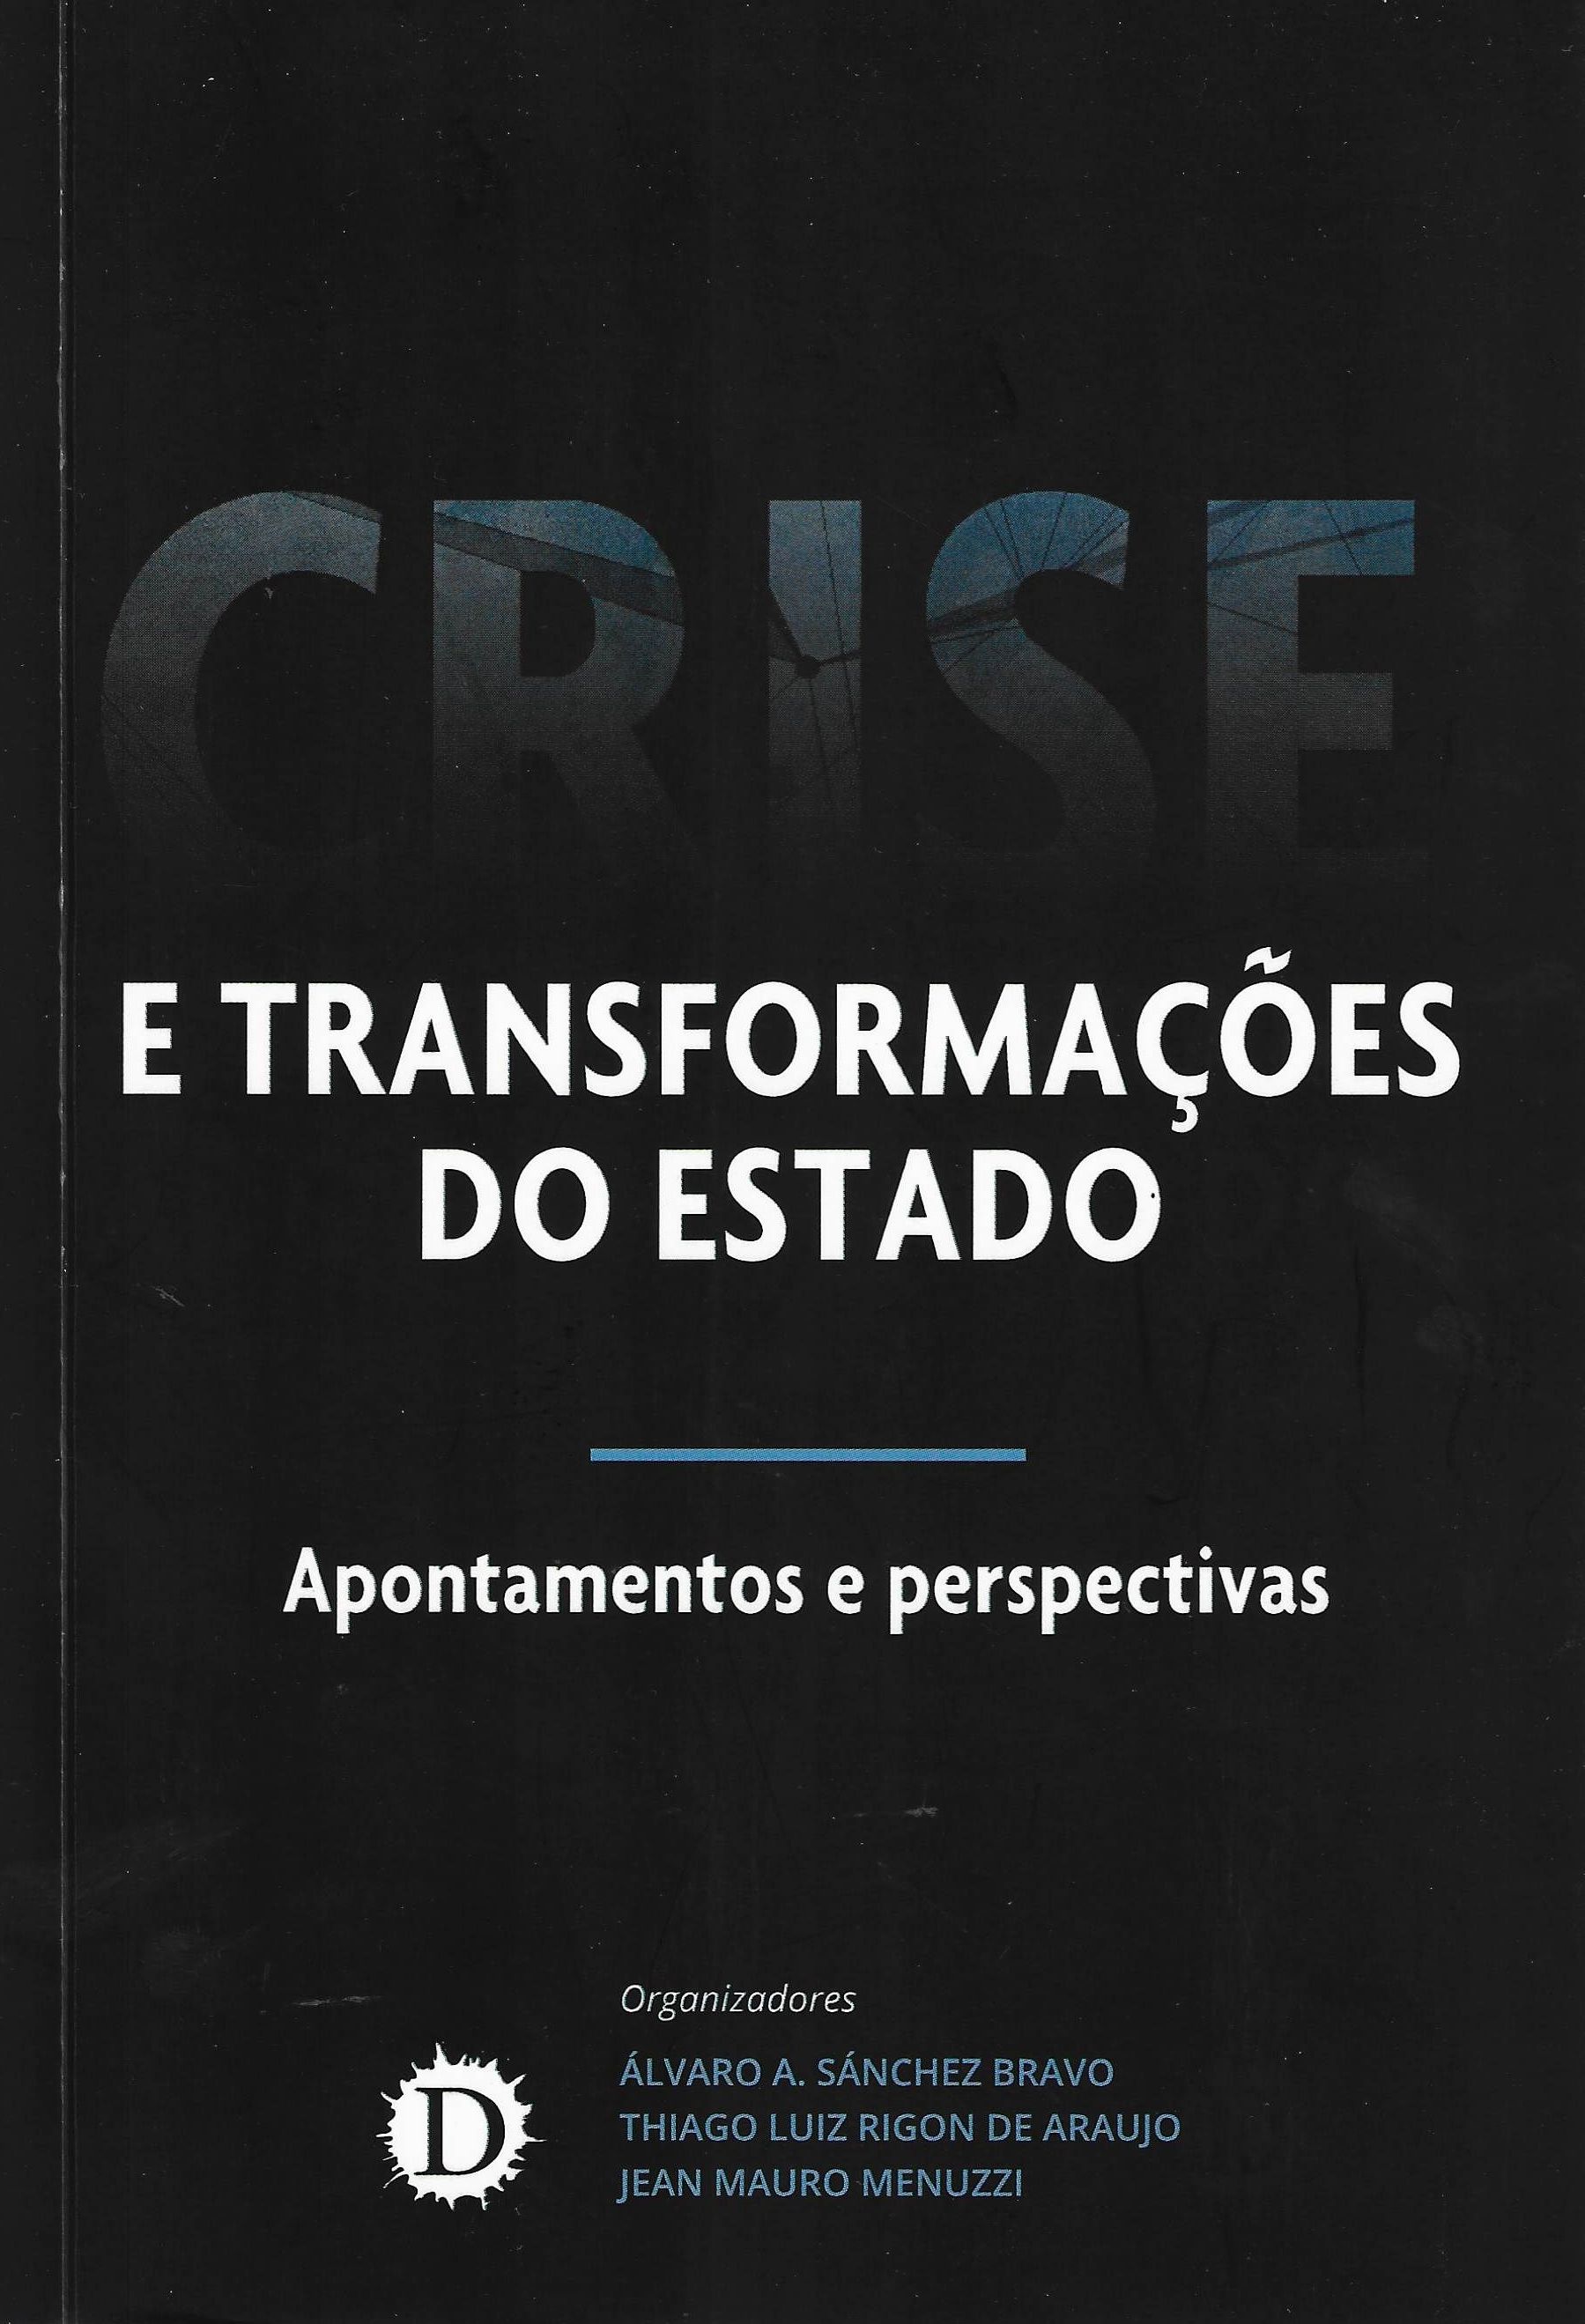 Imagen de portada del libro Crise e transformações do Estado: apontamentos e perspectivas